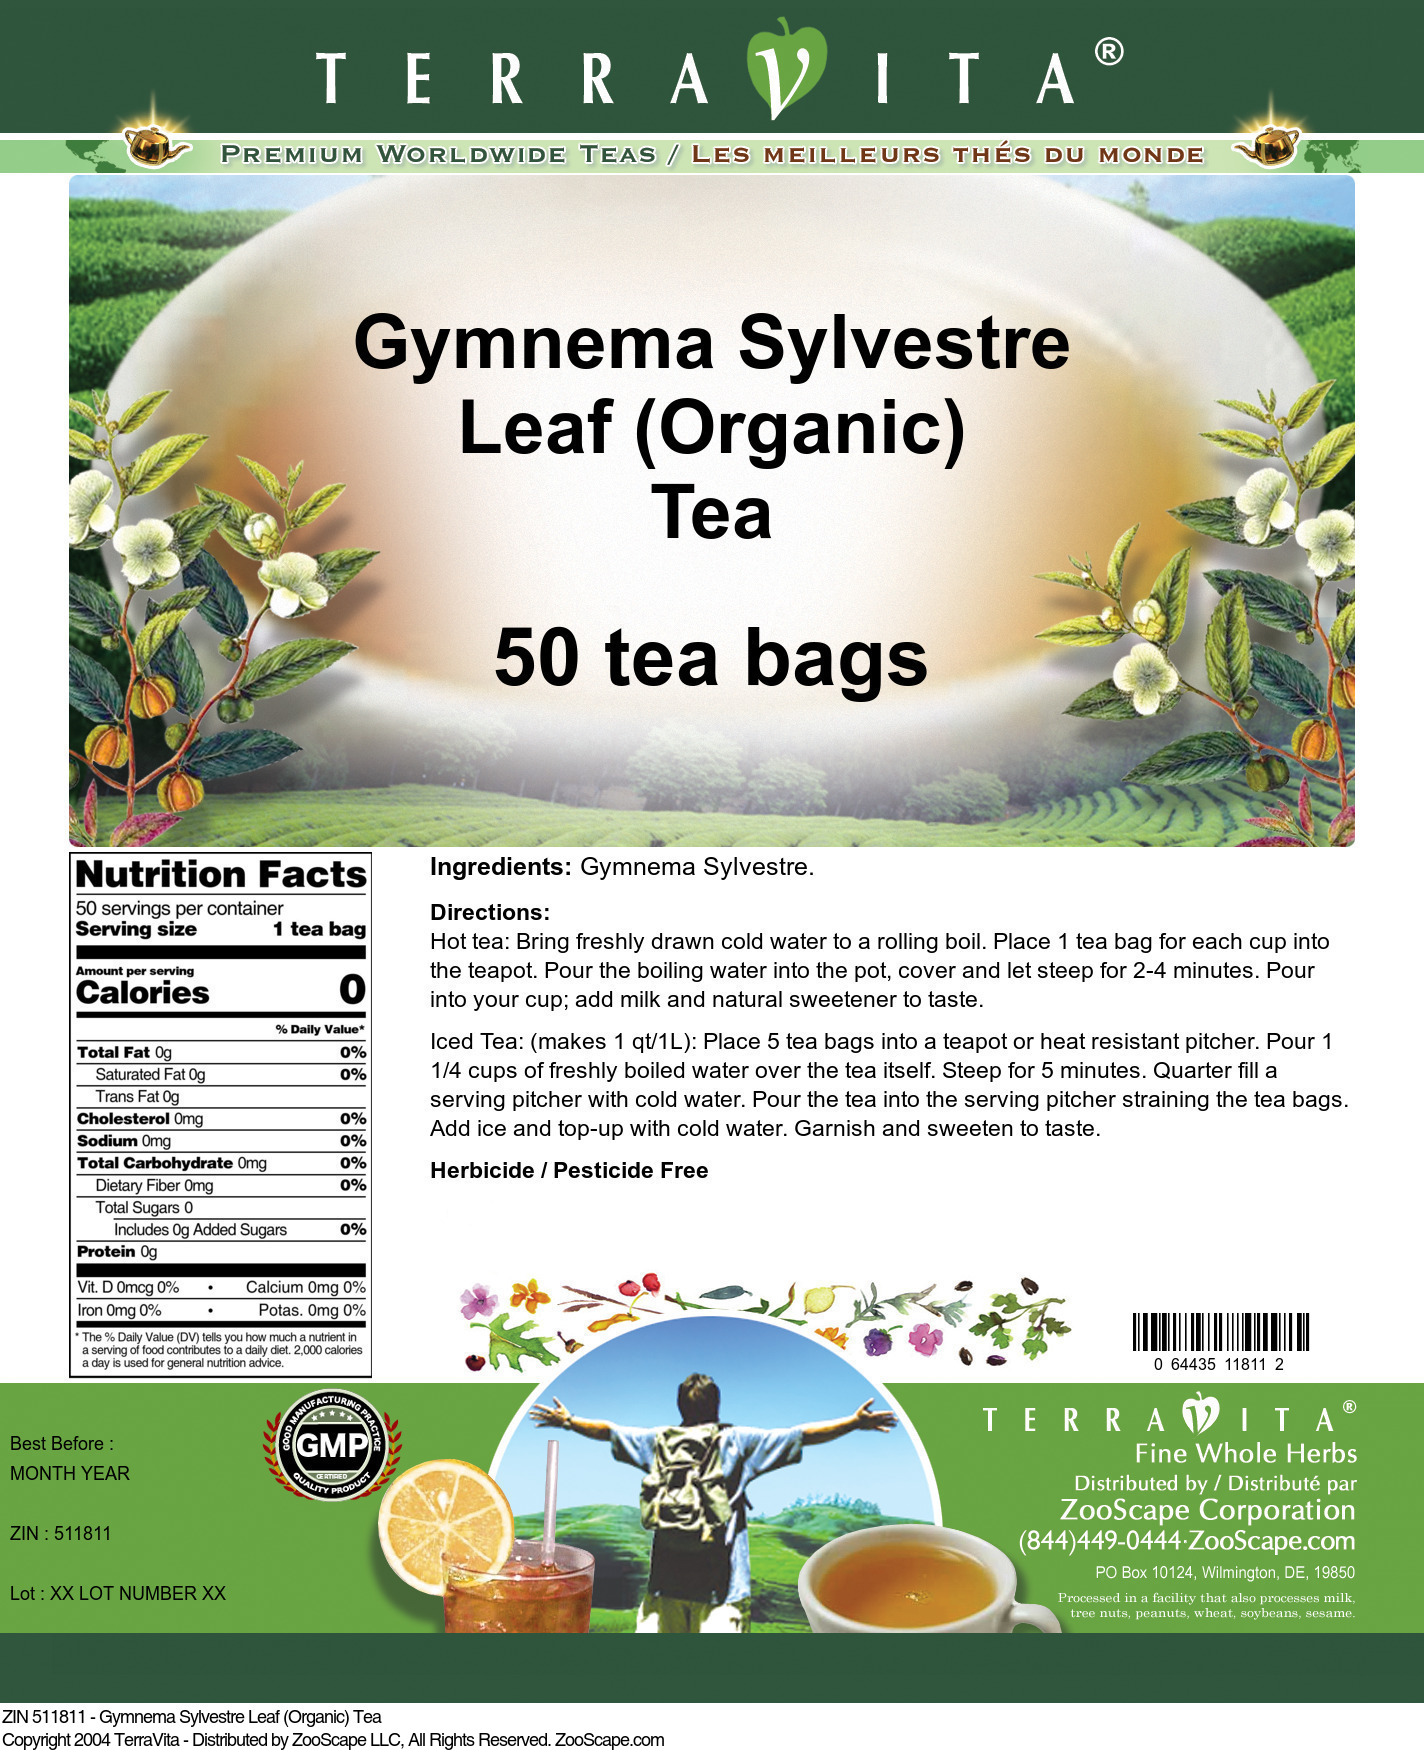 Gymnema Sylvestre Leaf (Organic) Tea - Label